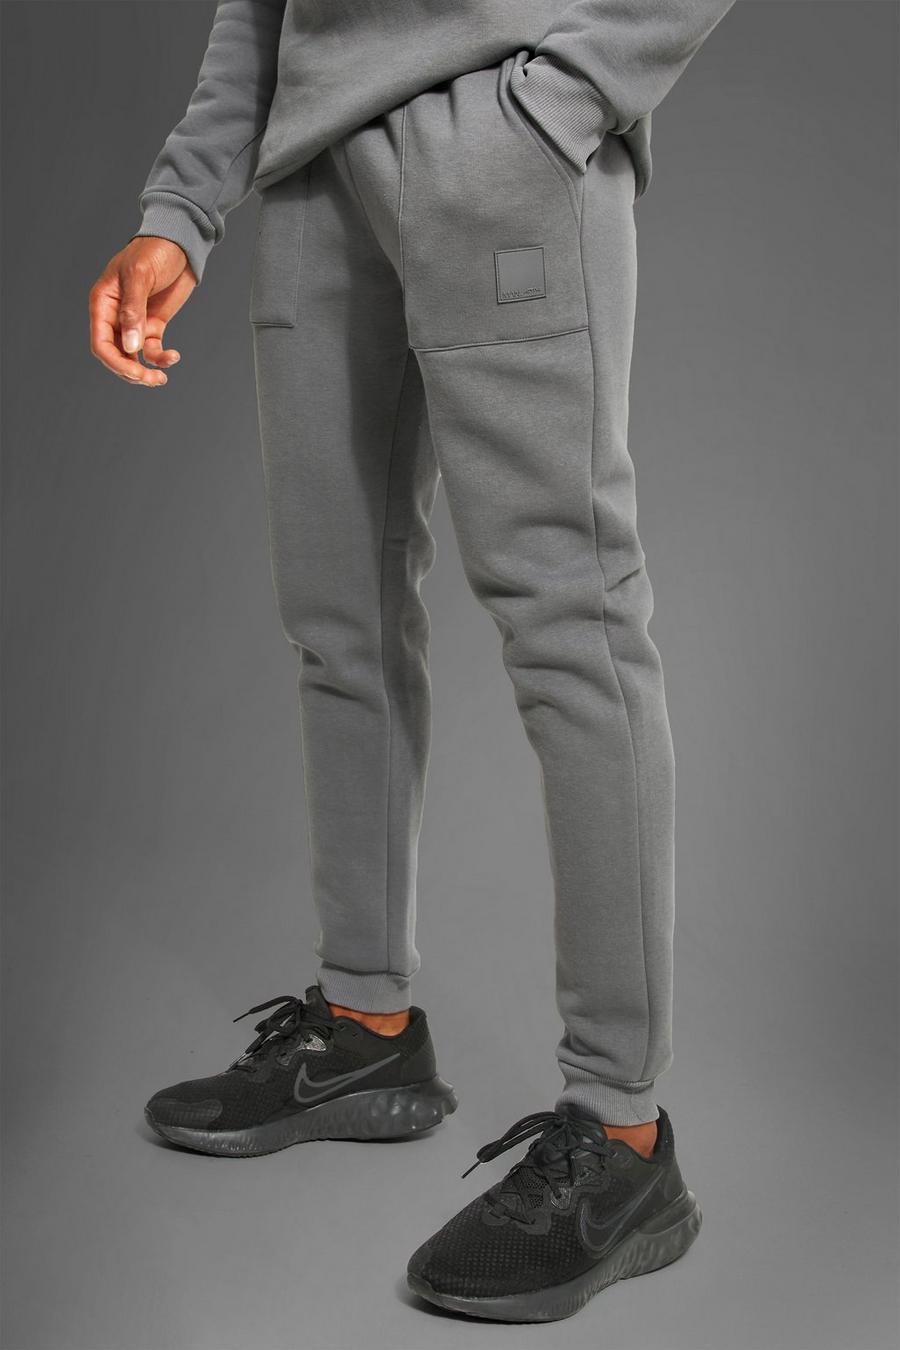 פחם grigio מכנסיים ספורטיביים לחדר הכושר עם כיסים וכיתוב Man